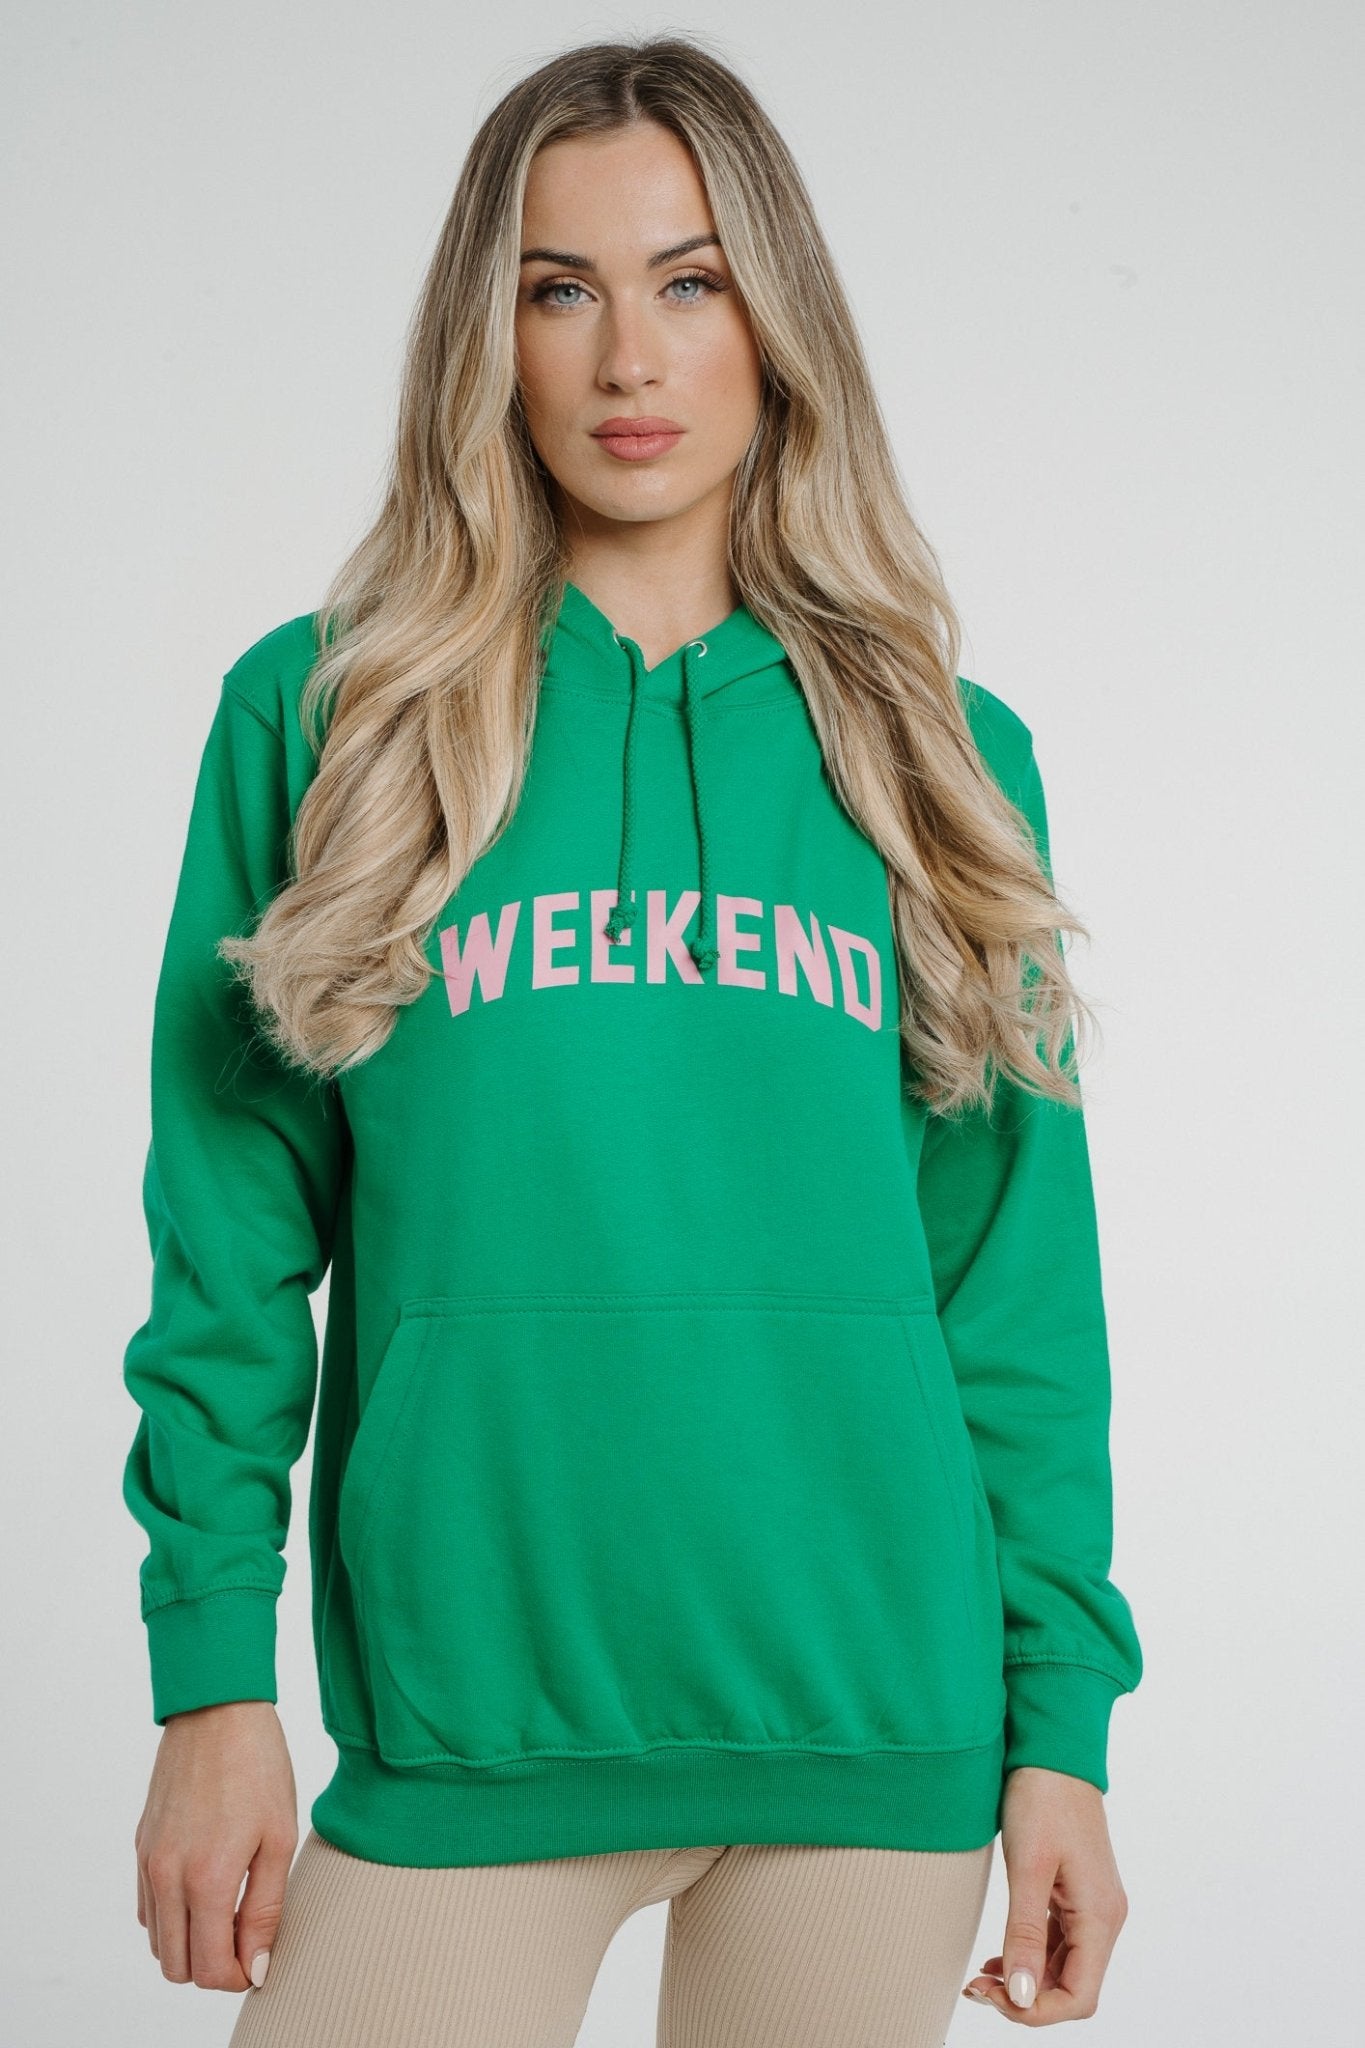 Polly Weekend Slogan Hoodie In Green - The Walk in Wardrobe